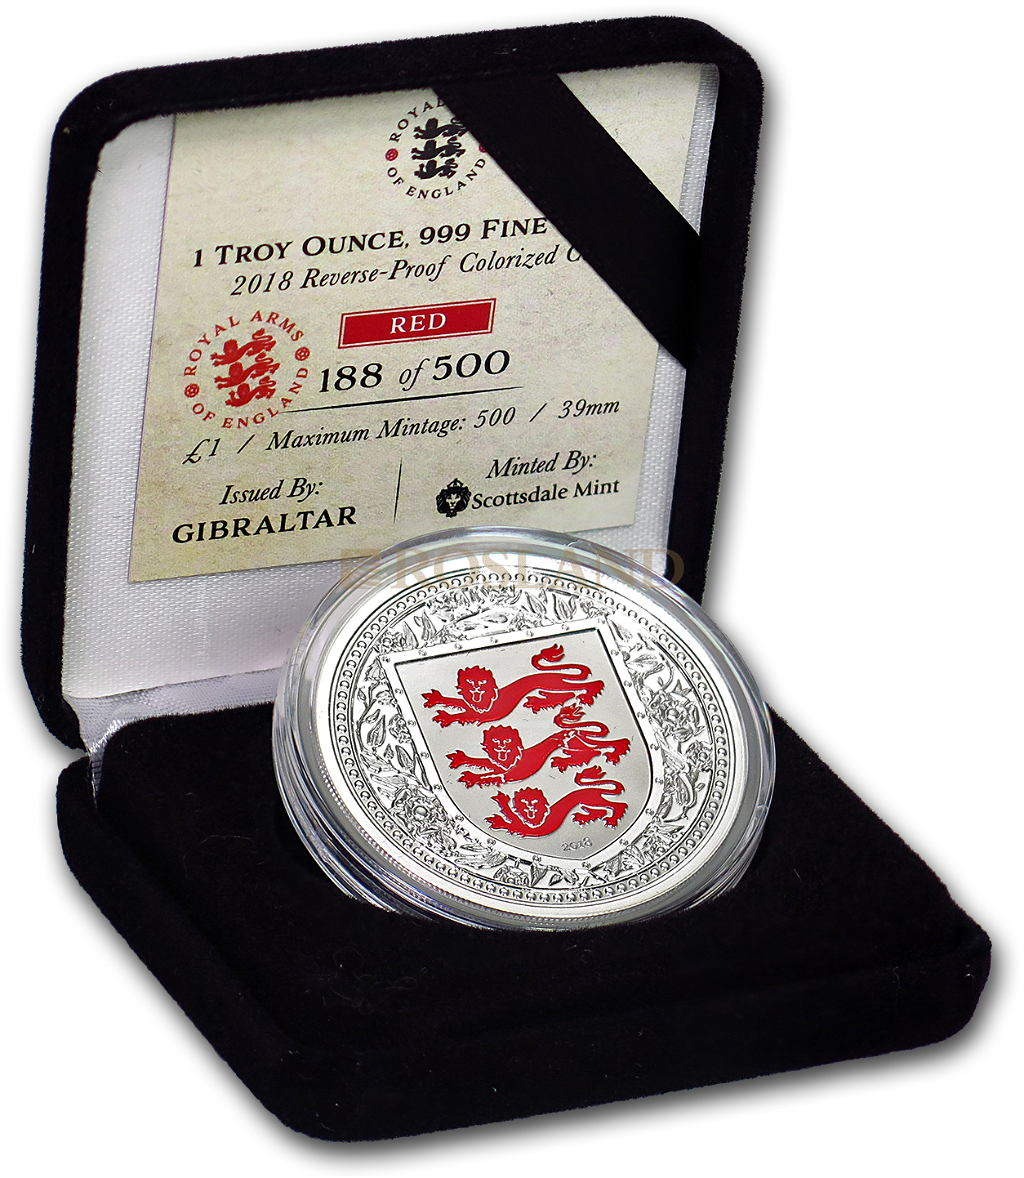 1 Unze Silbermünze Royal Arms of England 2018 PP (Rot, Box, Zertifikat)